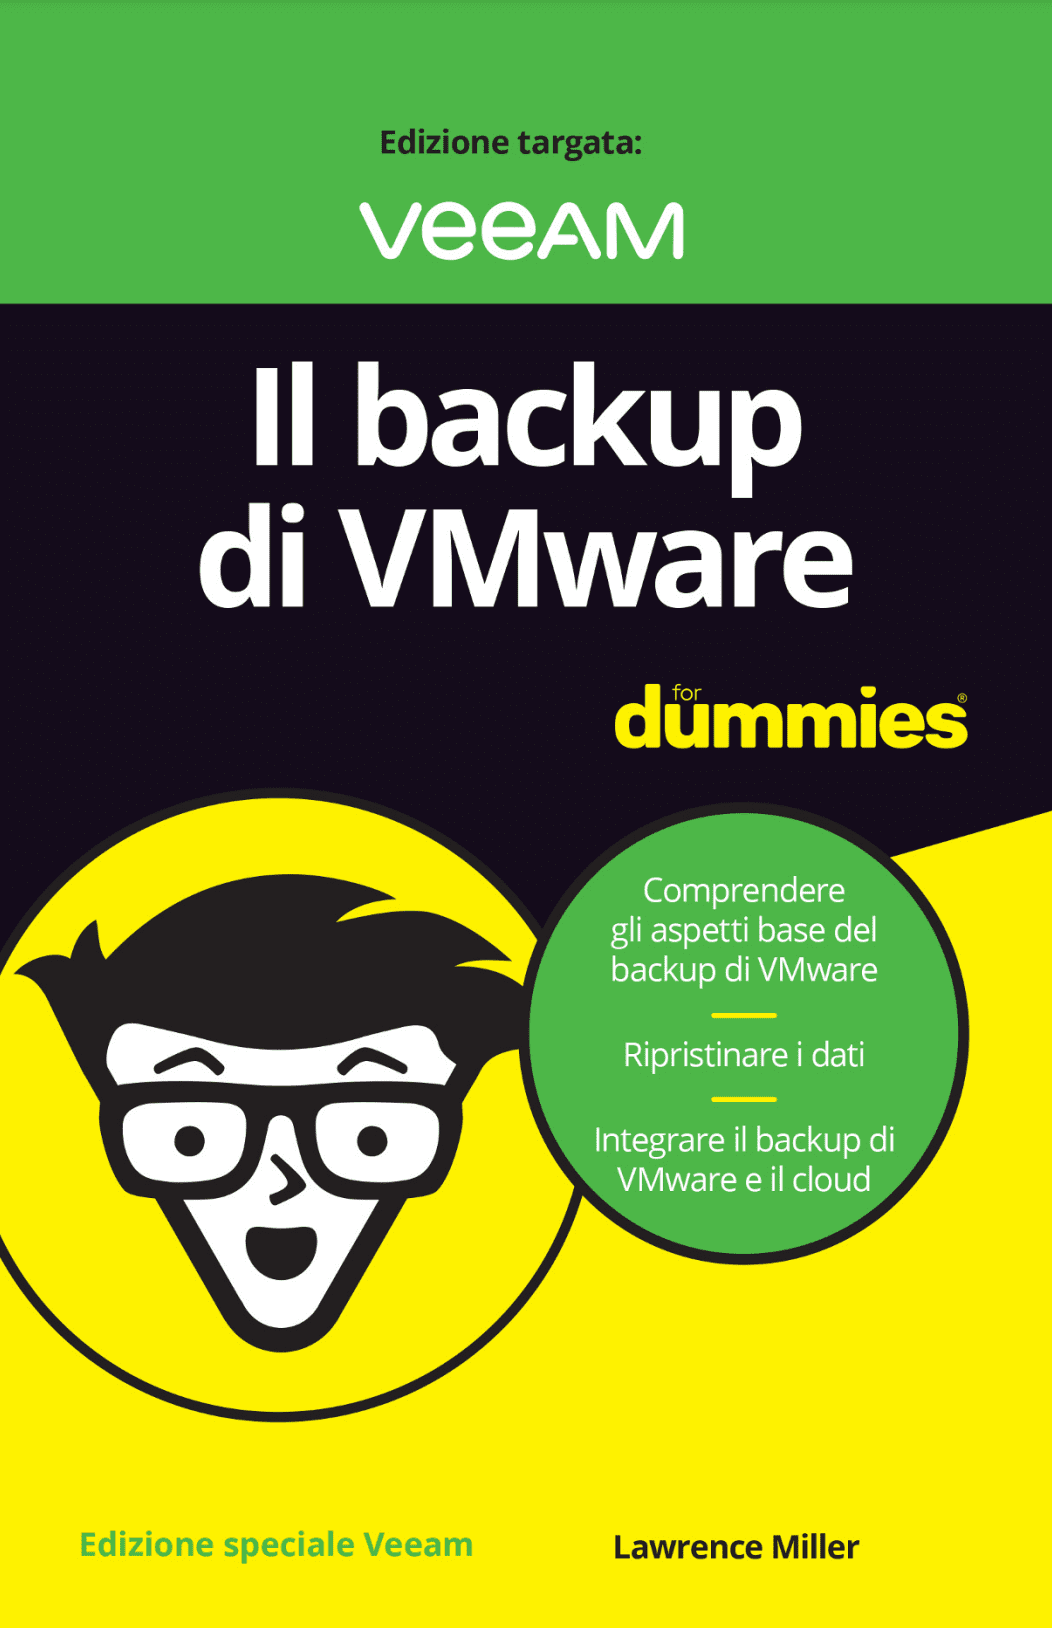 Fig. 1 Il backup di VMware For Dummies